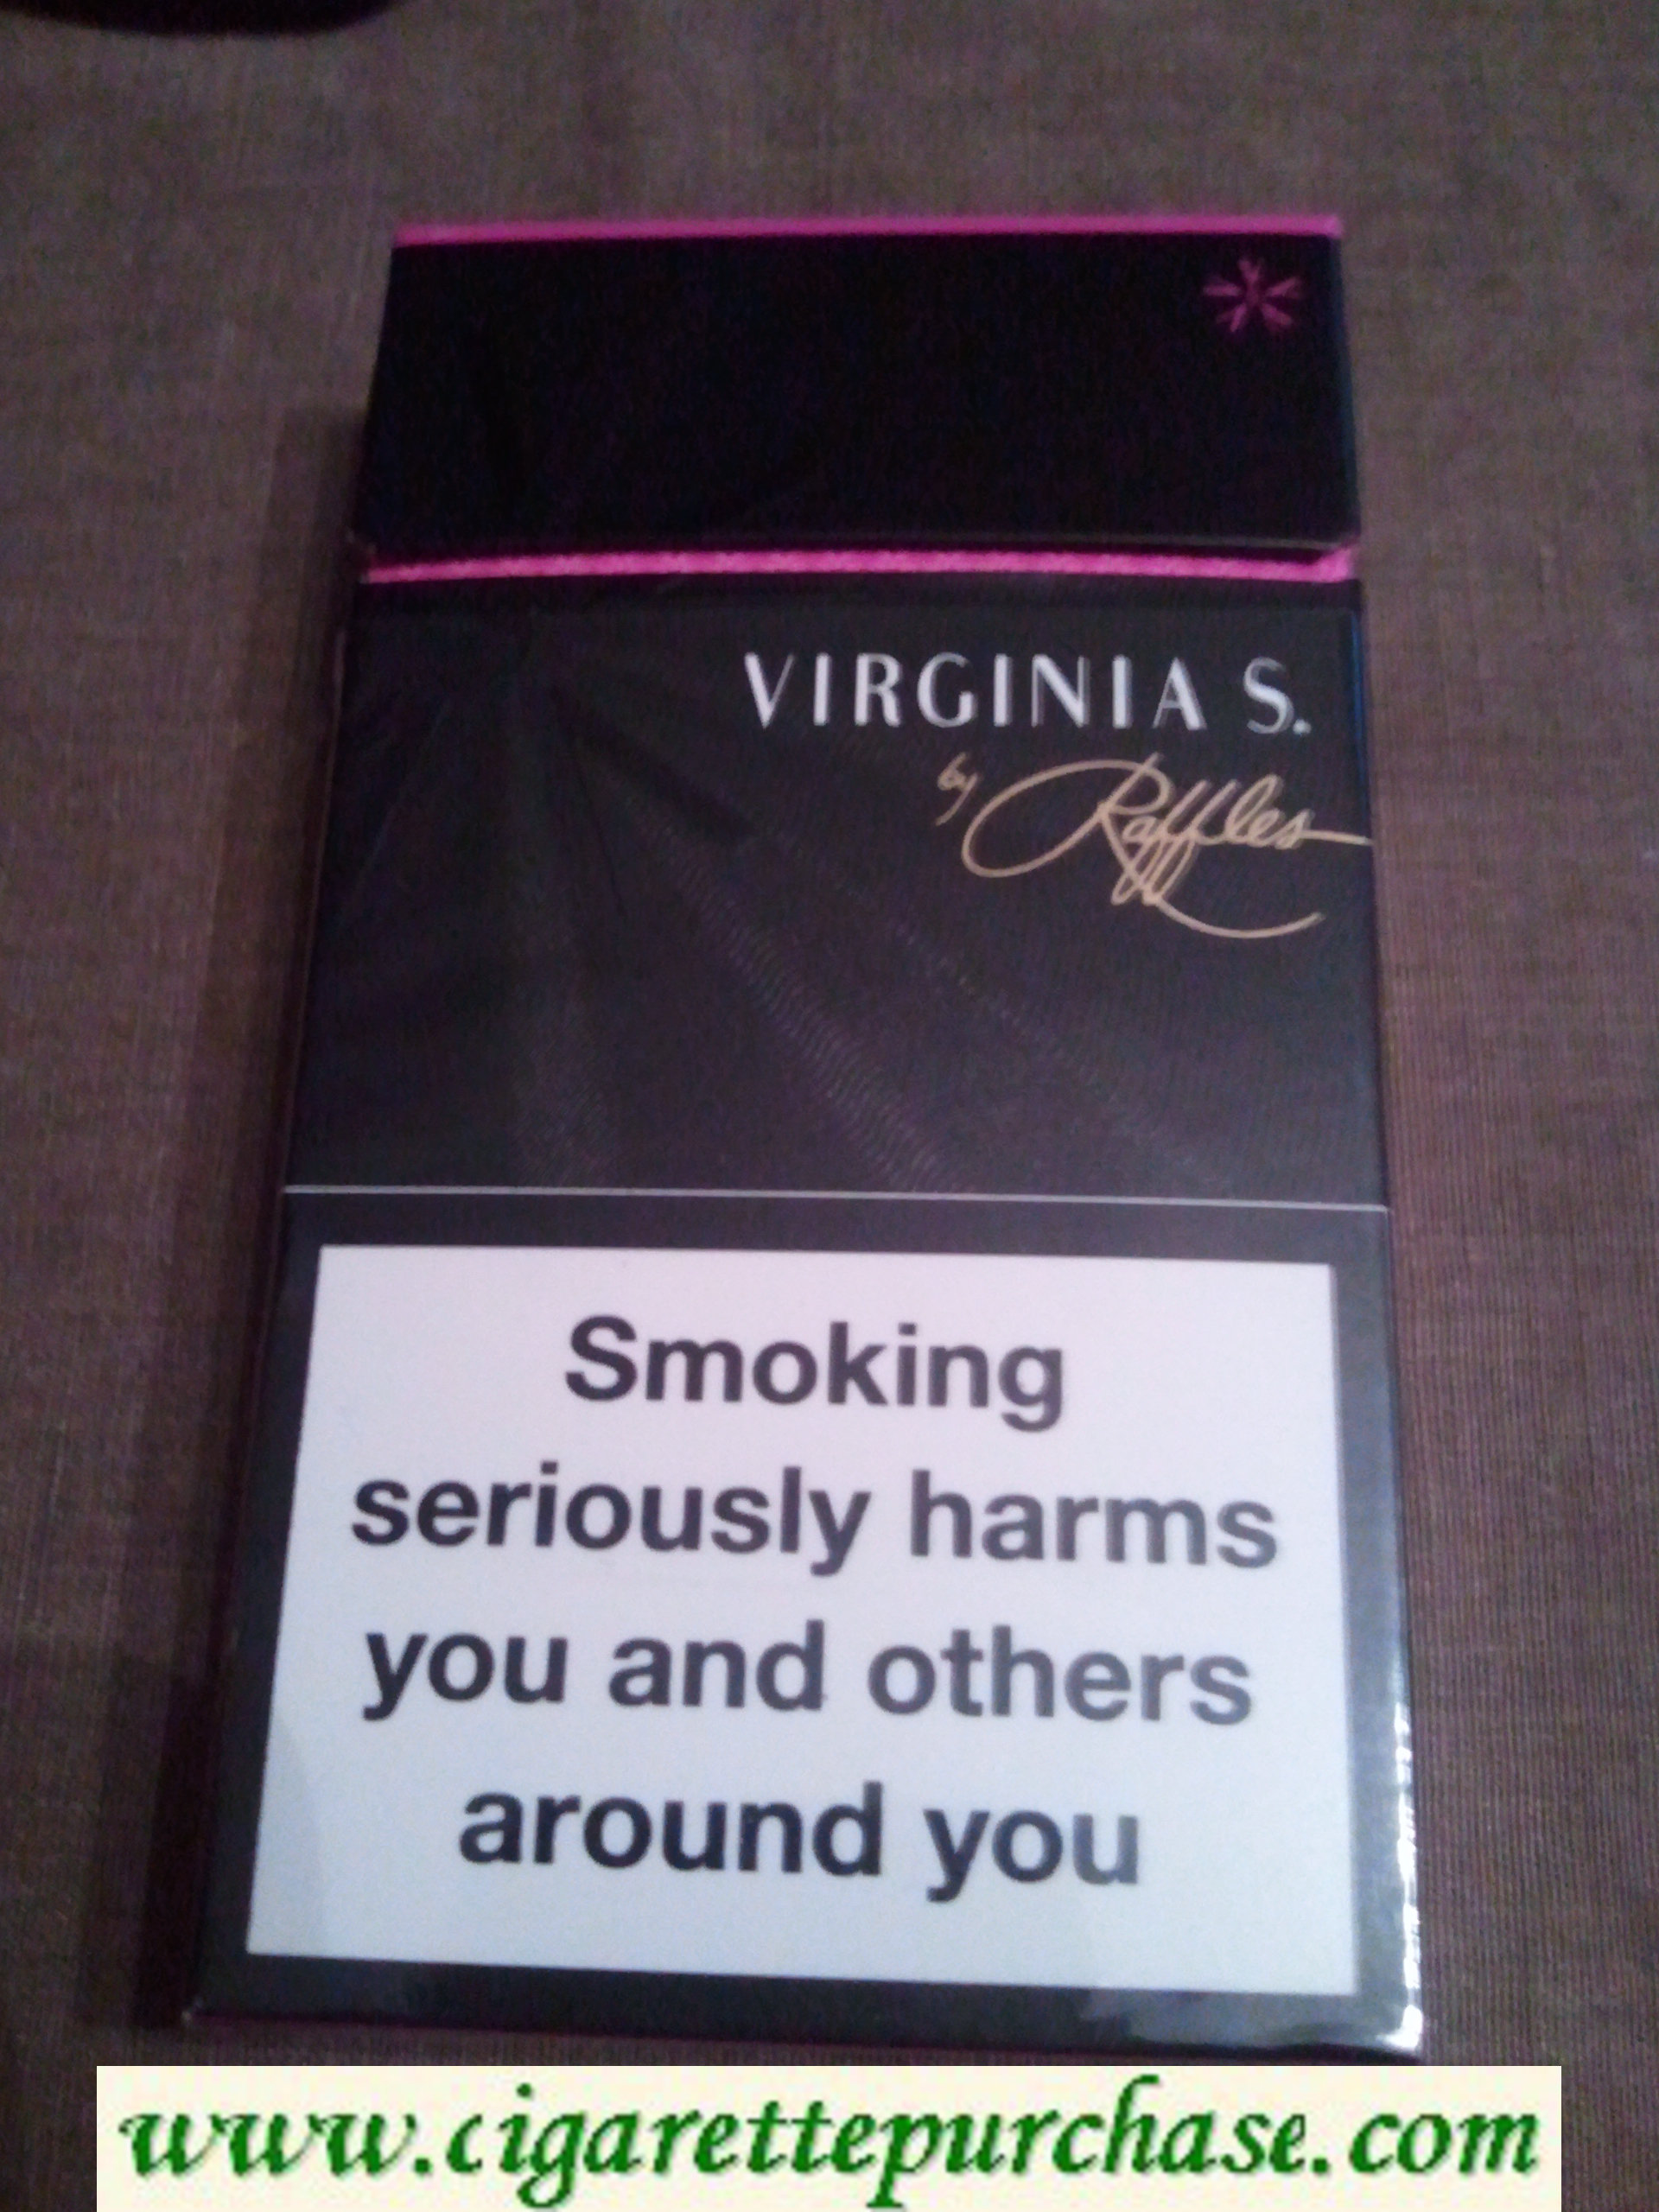 Virginia S. 100s cigarettes hard box